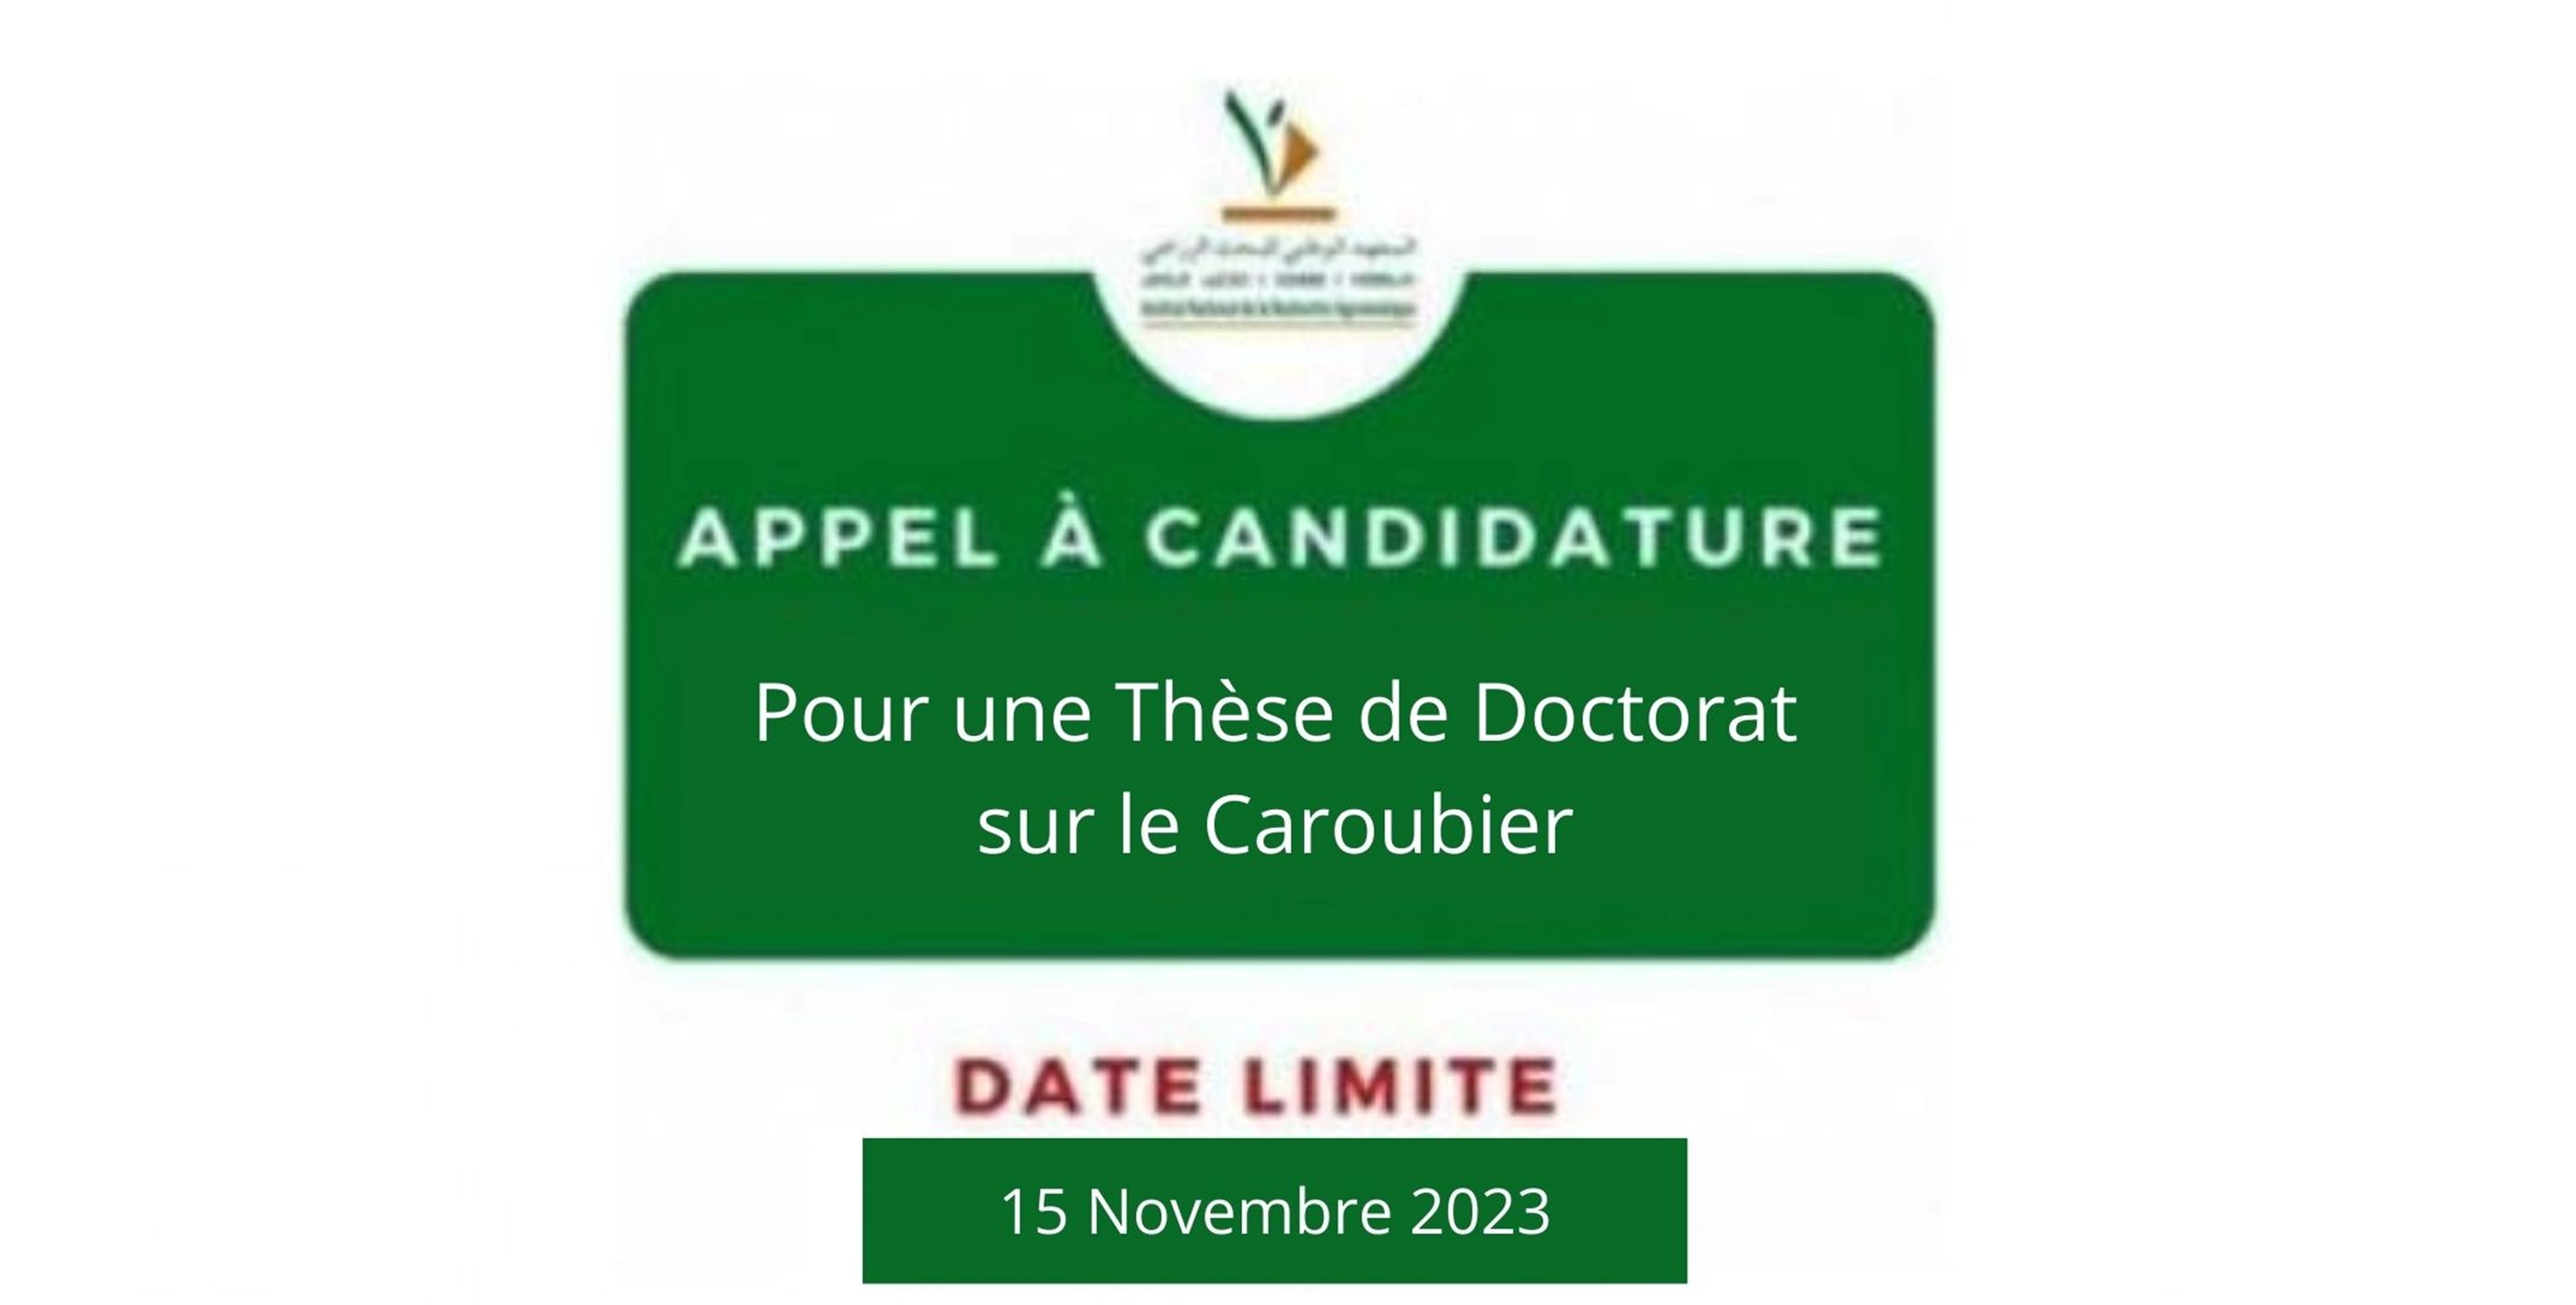 




17/10/2023 | Appel à Candidature pour une Thèse de Doctorat sur le Caroubier à l'INRA Meknès


